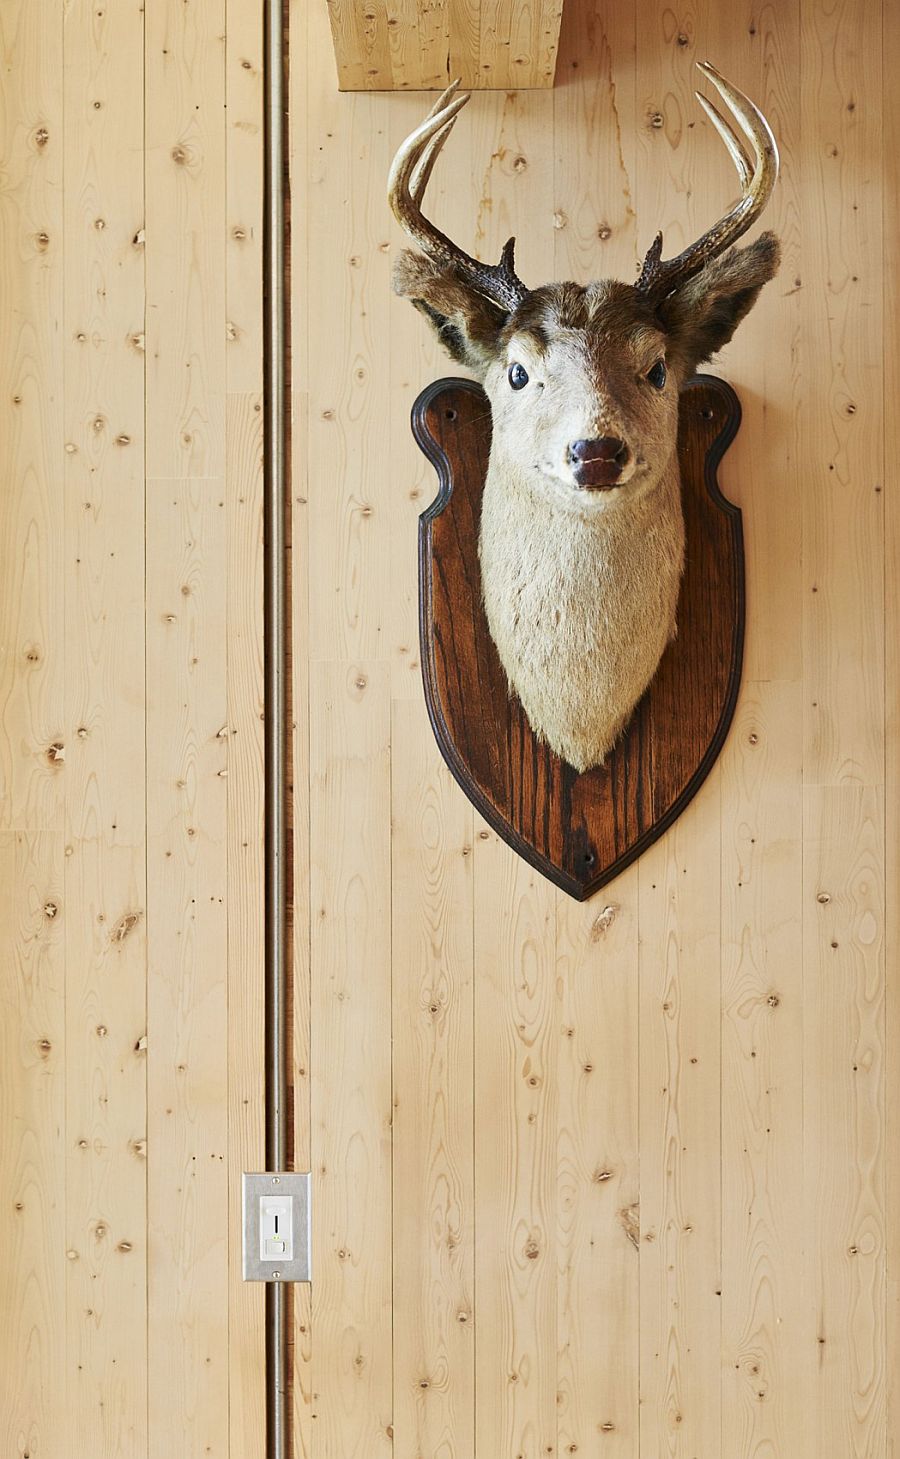 Резиденция Cross-Laminated-Timber - голова оленя (чучело) на стене как прекрасное дополнение интерьера